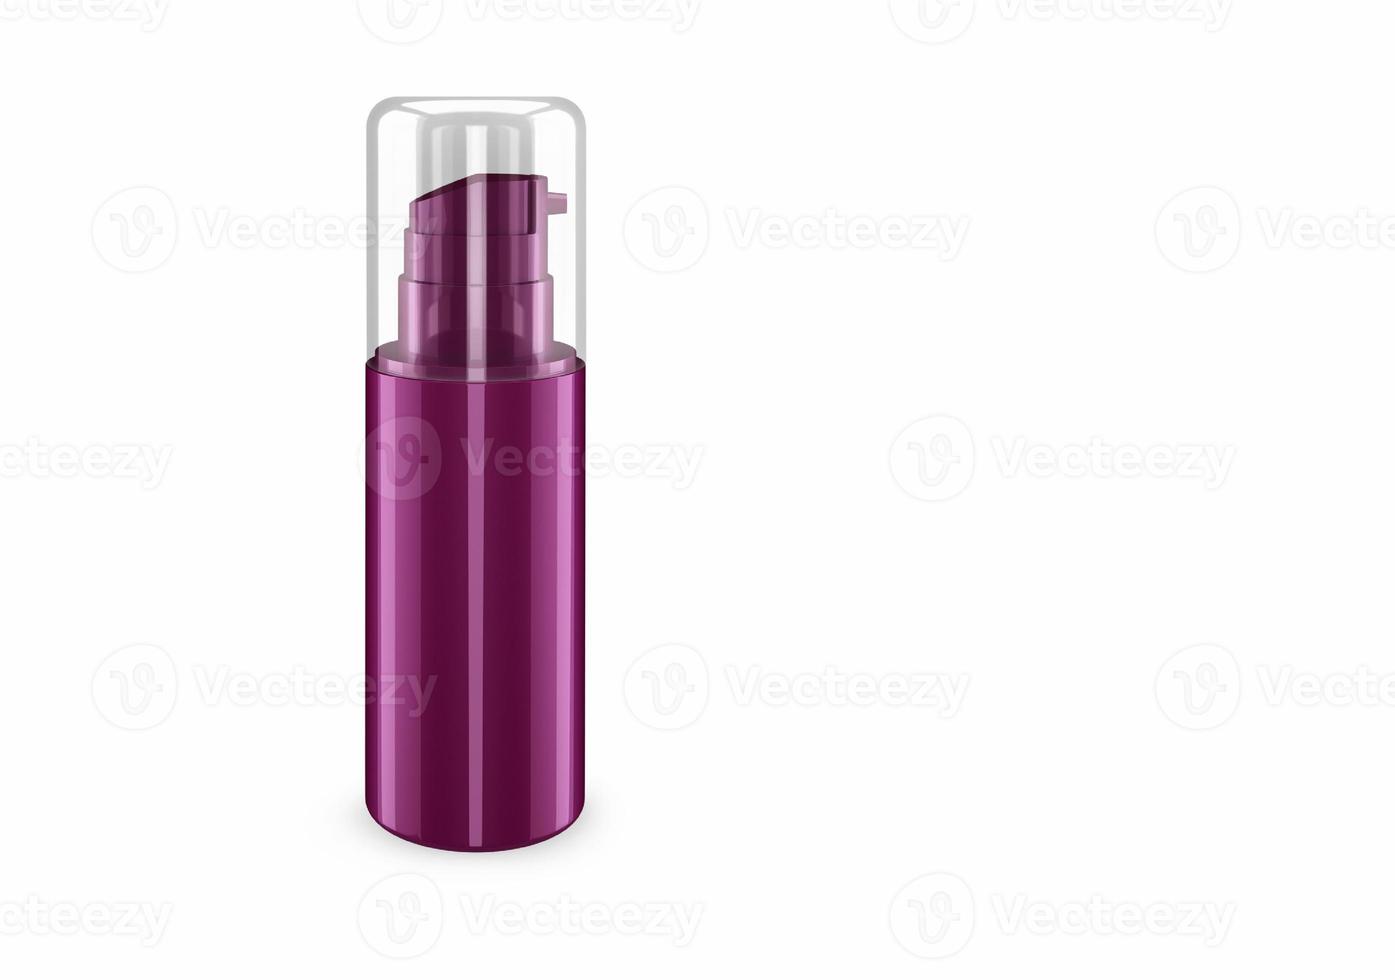 diep lila parelmoer spray bootle mockup geïsoleerd van achtergrond shampoo plastic bootle pakketontwerp. lege sjabloon voor hygiëne, medische, lichaams- of gezichtsverzorging. 3d illustratie foto